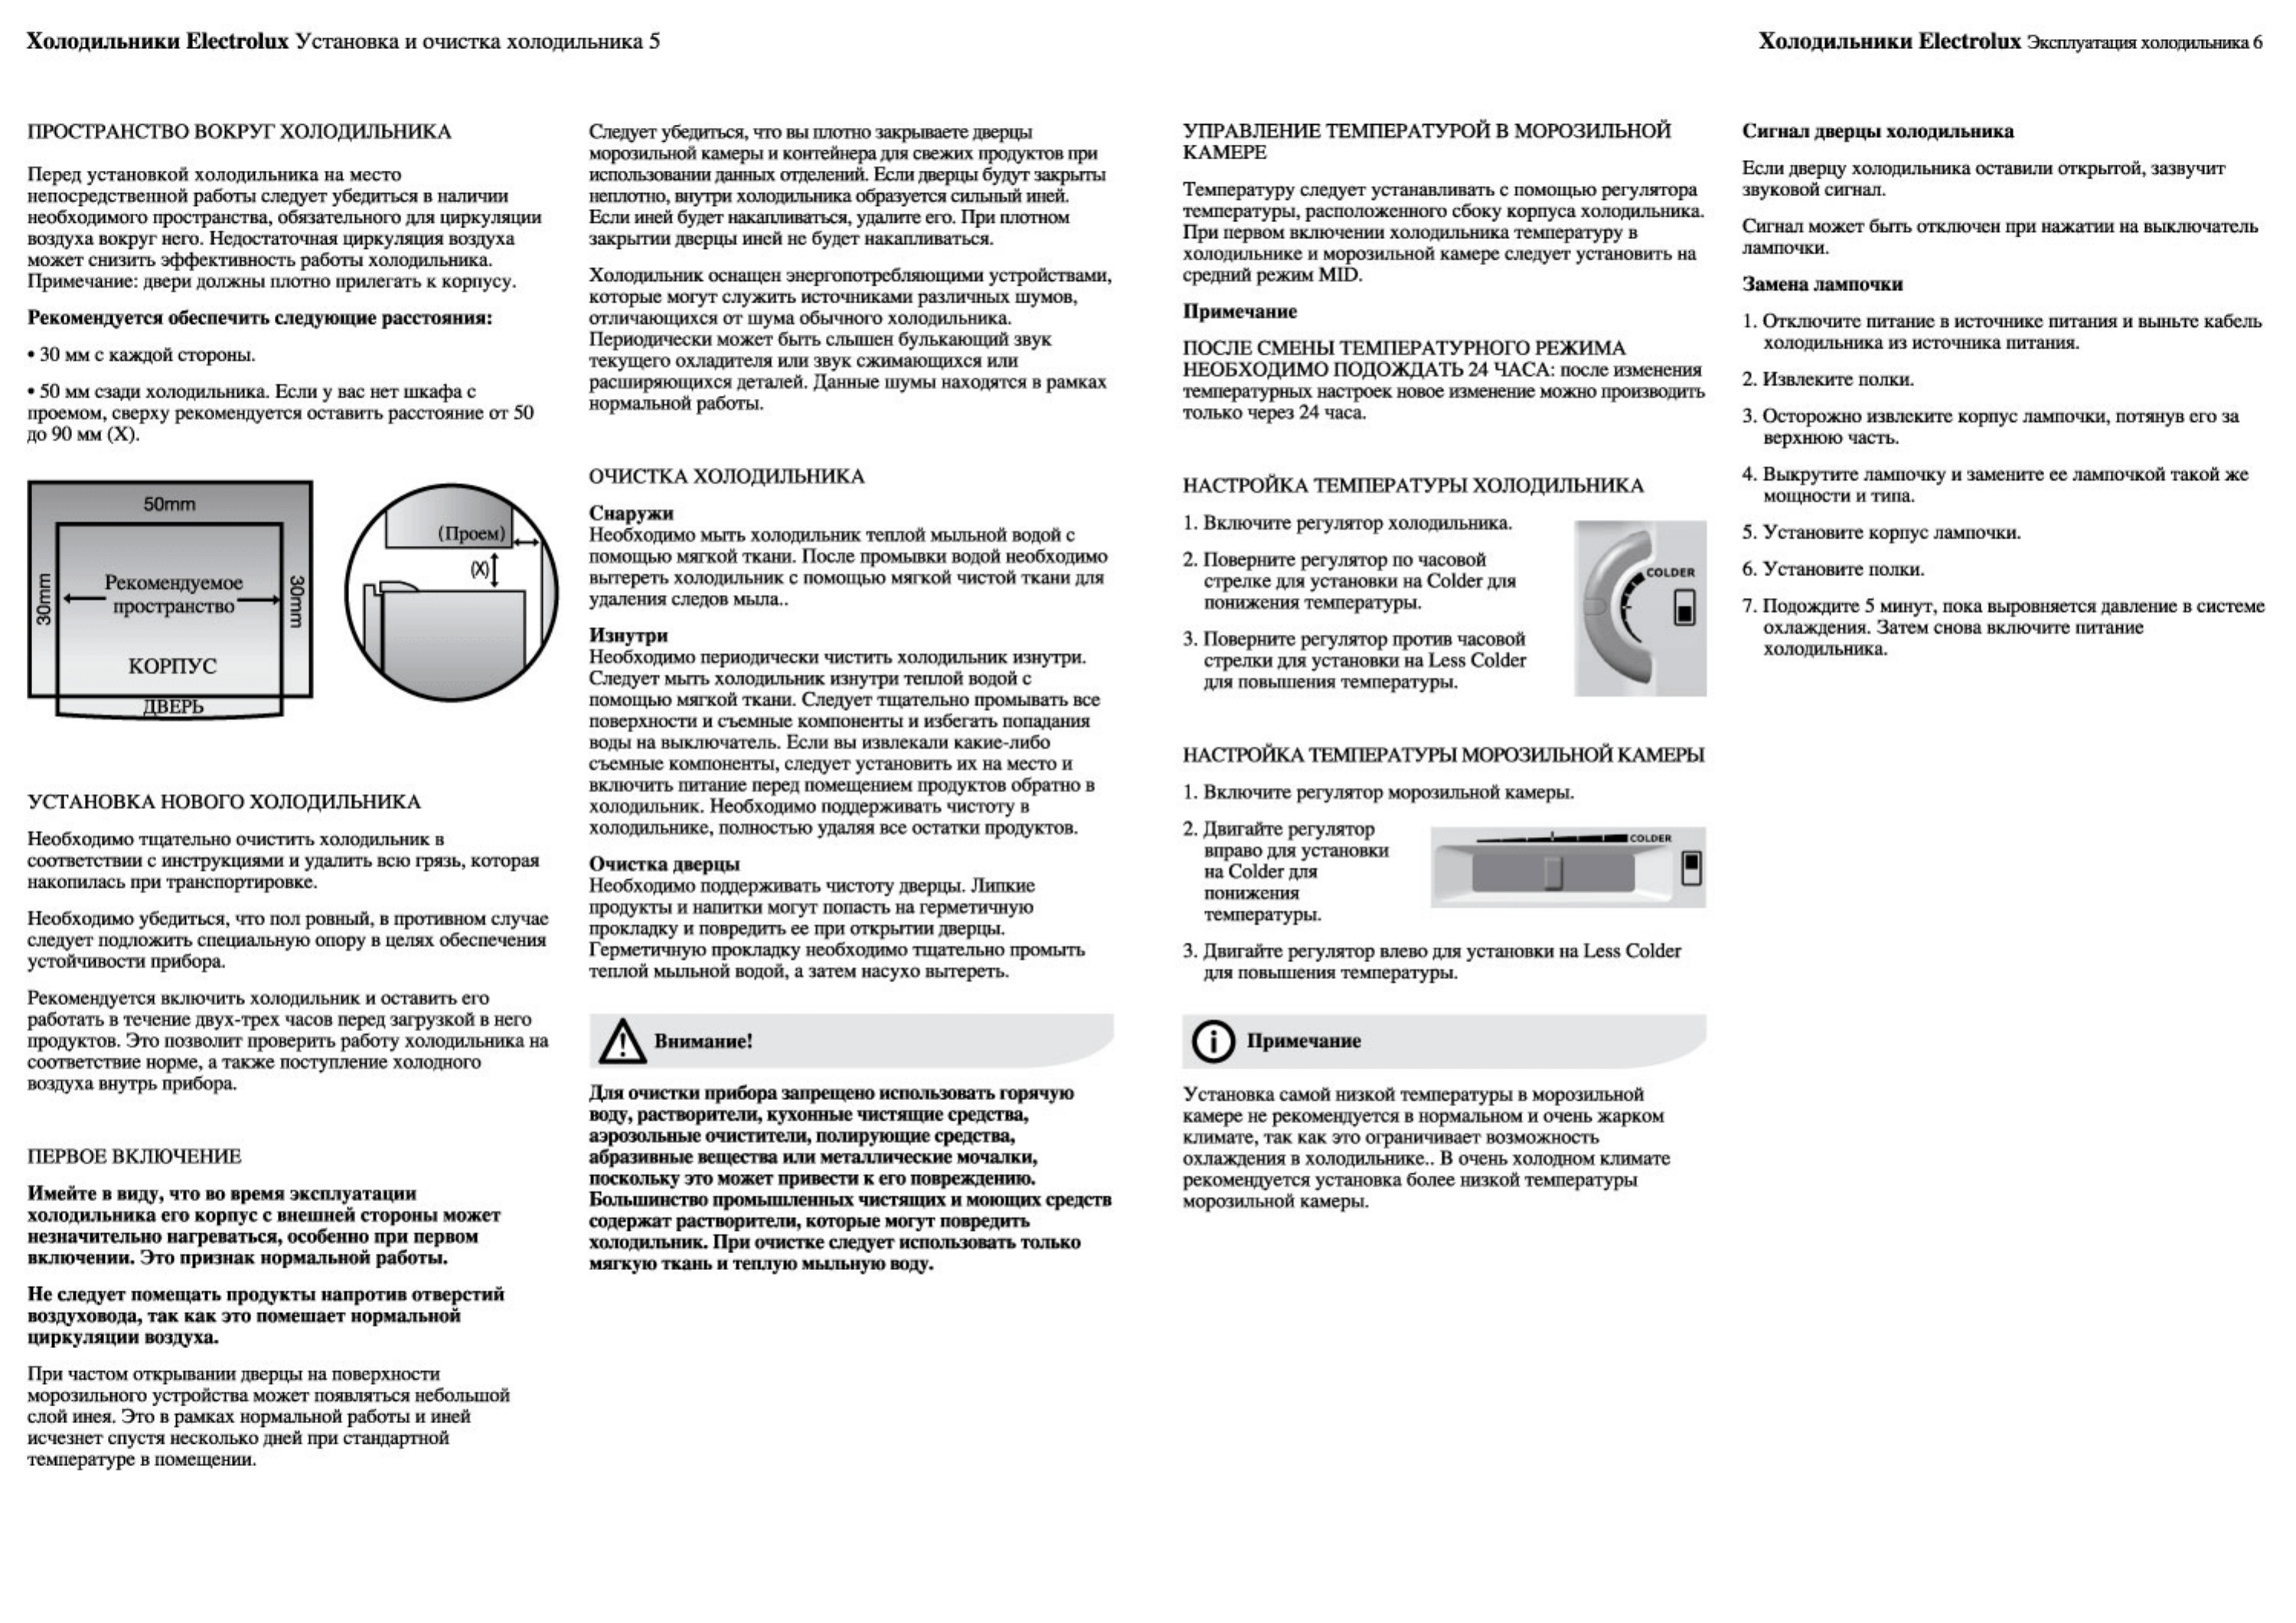 Ремонт термостата холодильника: схема подключения, как проверить, регулировка